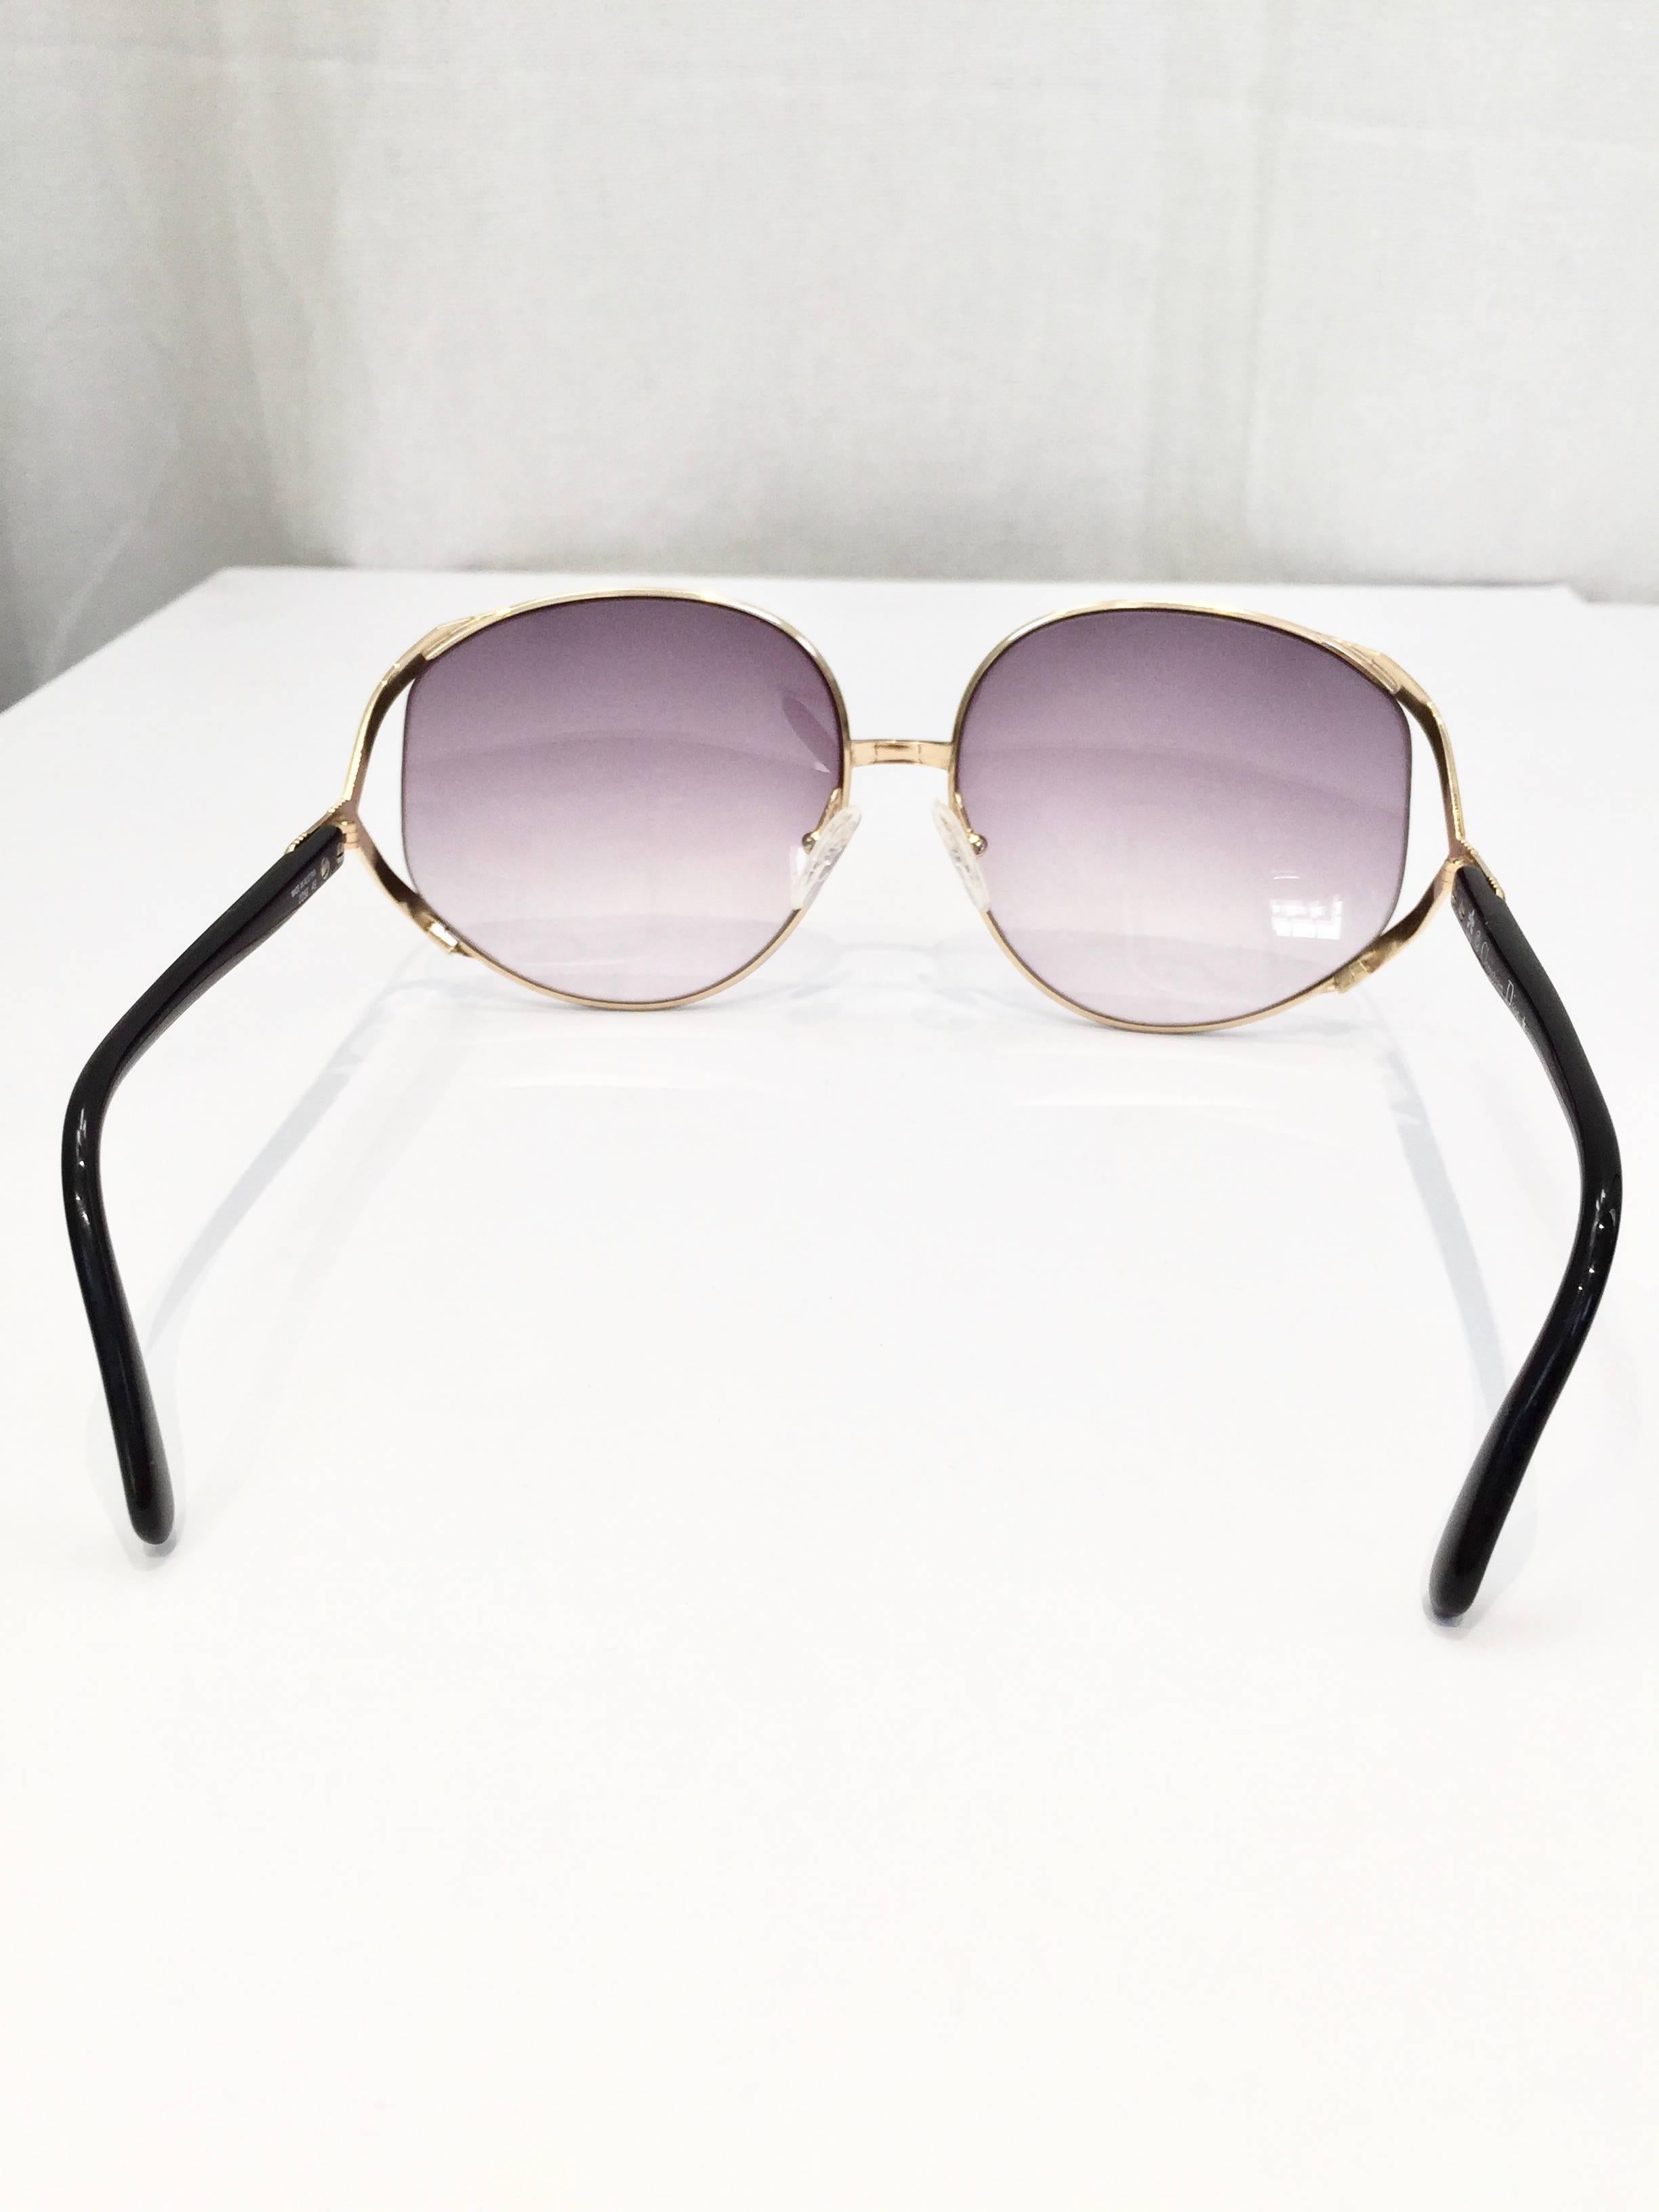 Gris Christian Dior lunettes de soleil noires à monture dorée, années 70 en vente